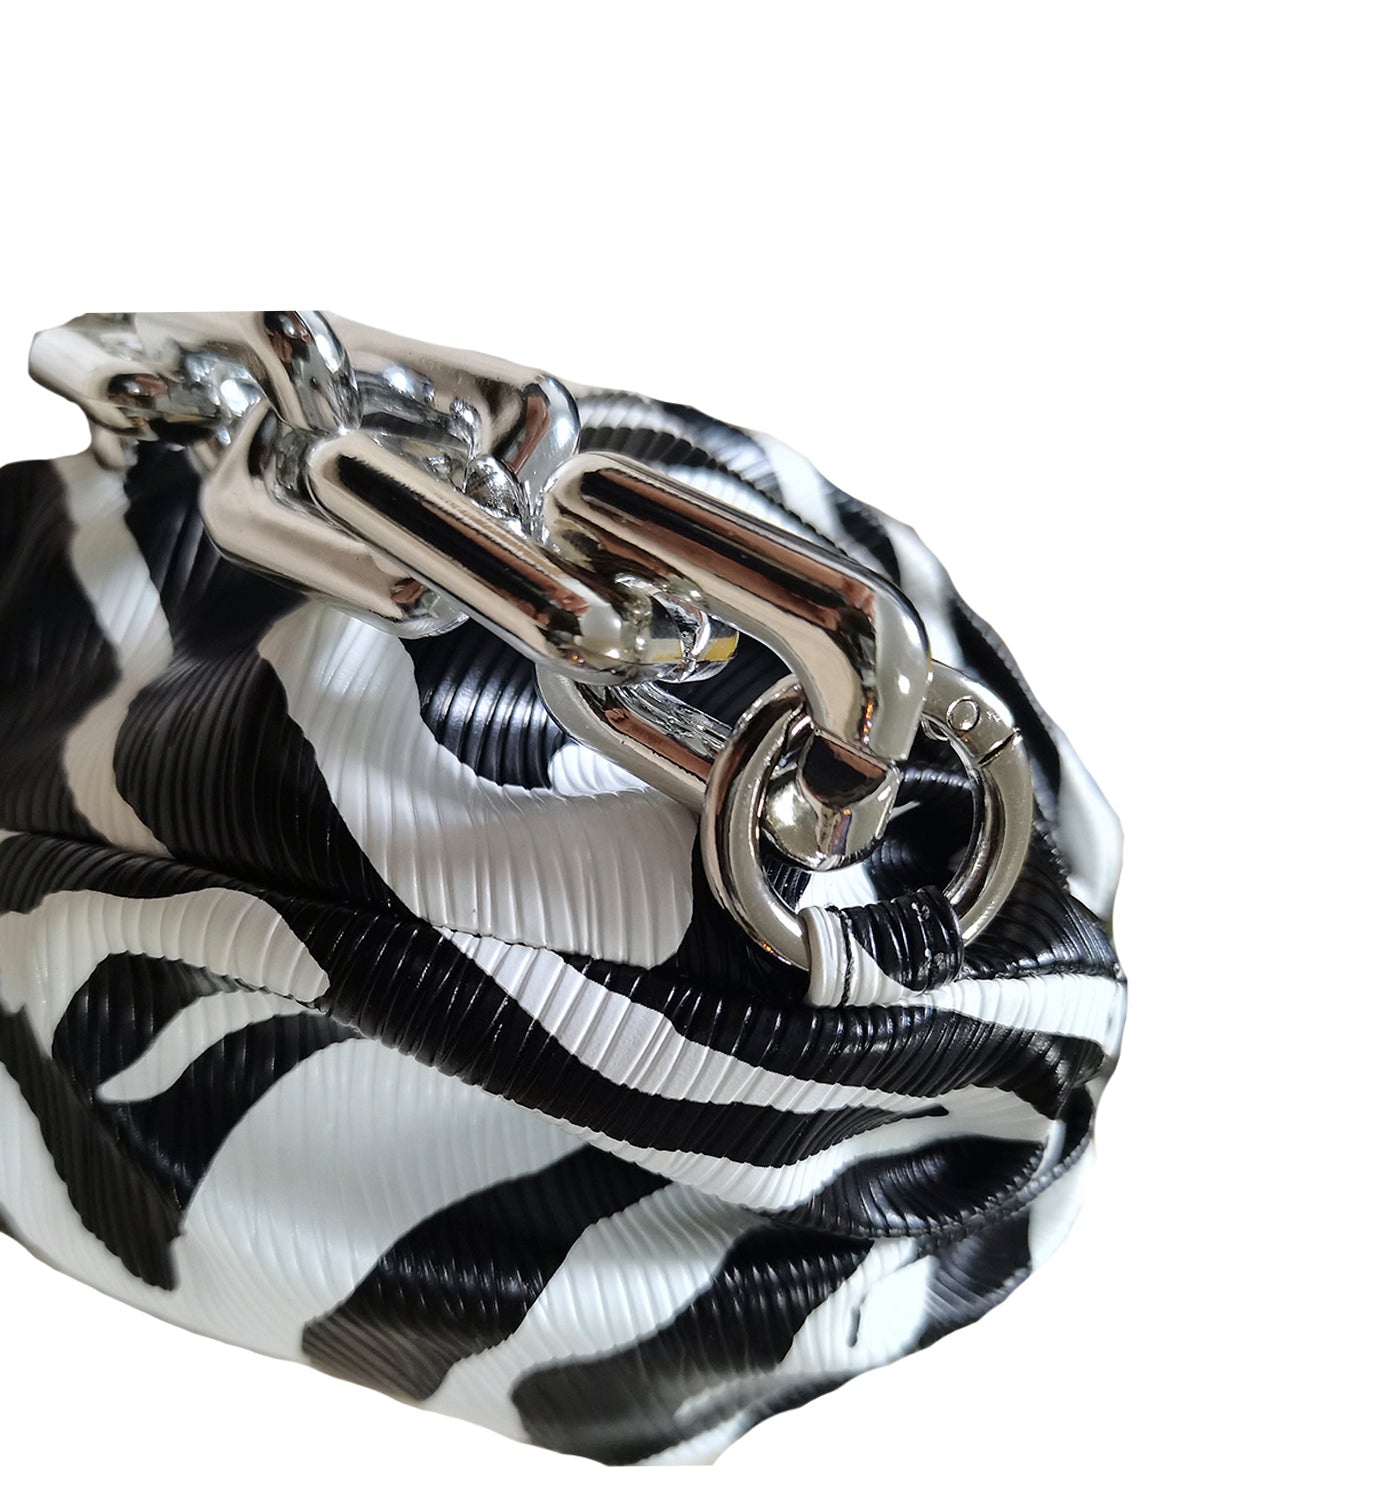 Zebra Print Chain Clutch Bag - DIGS